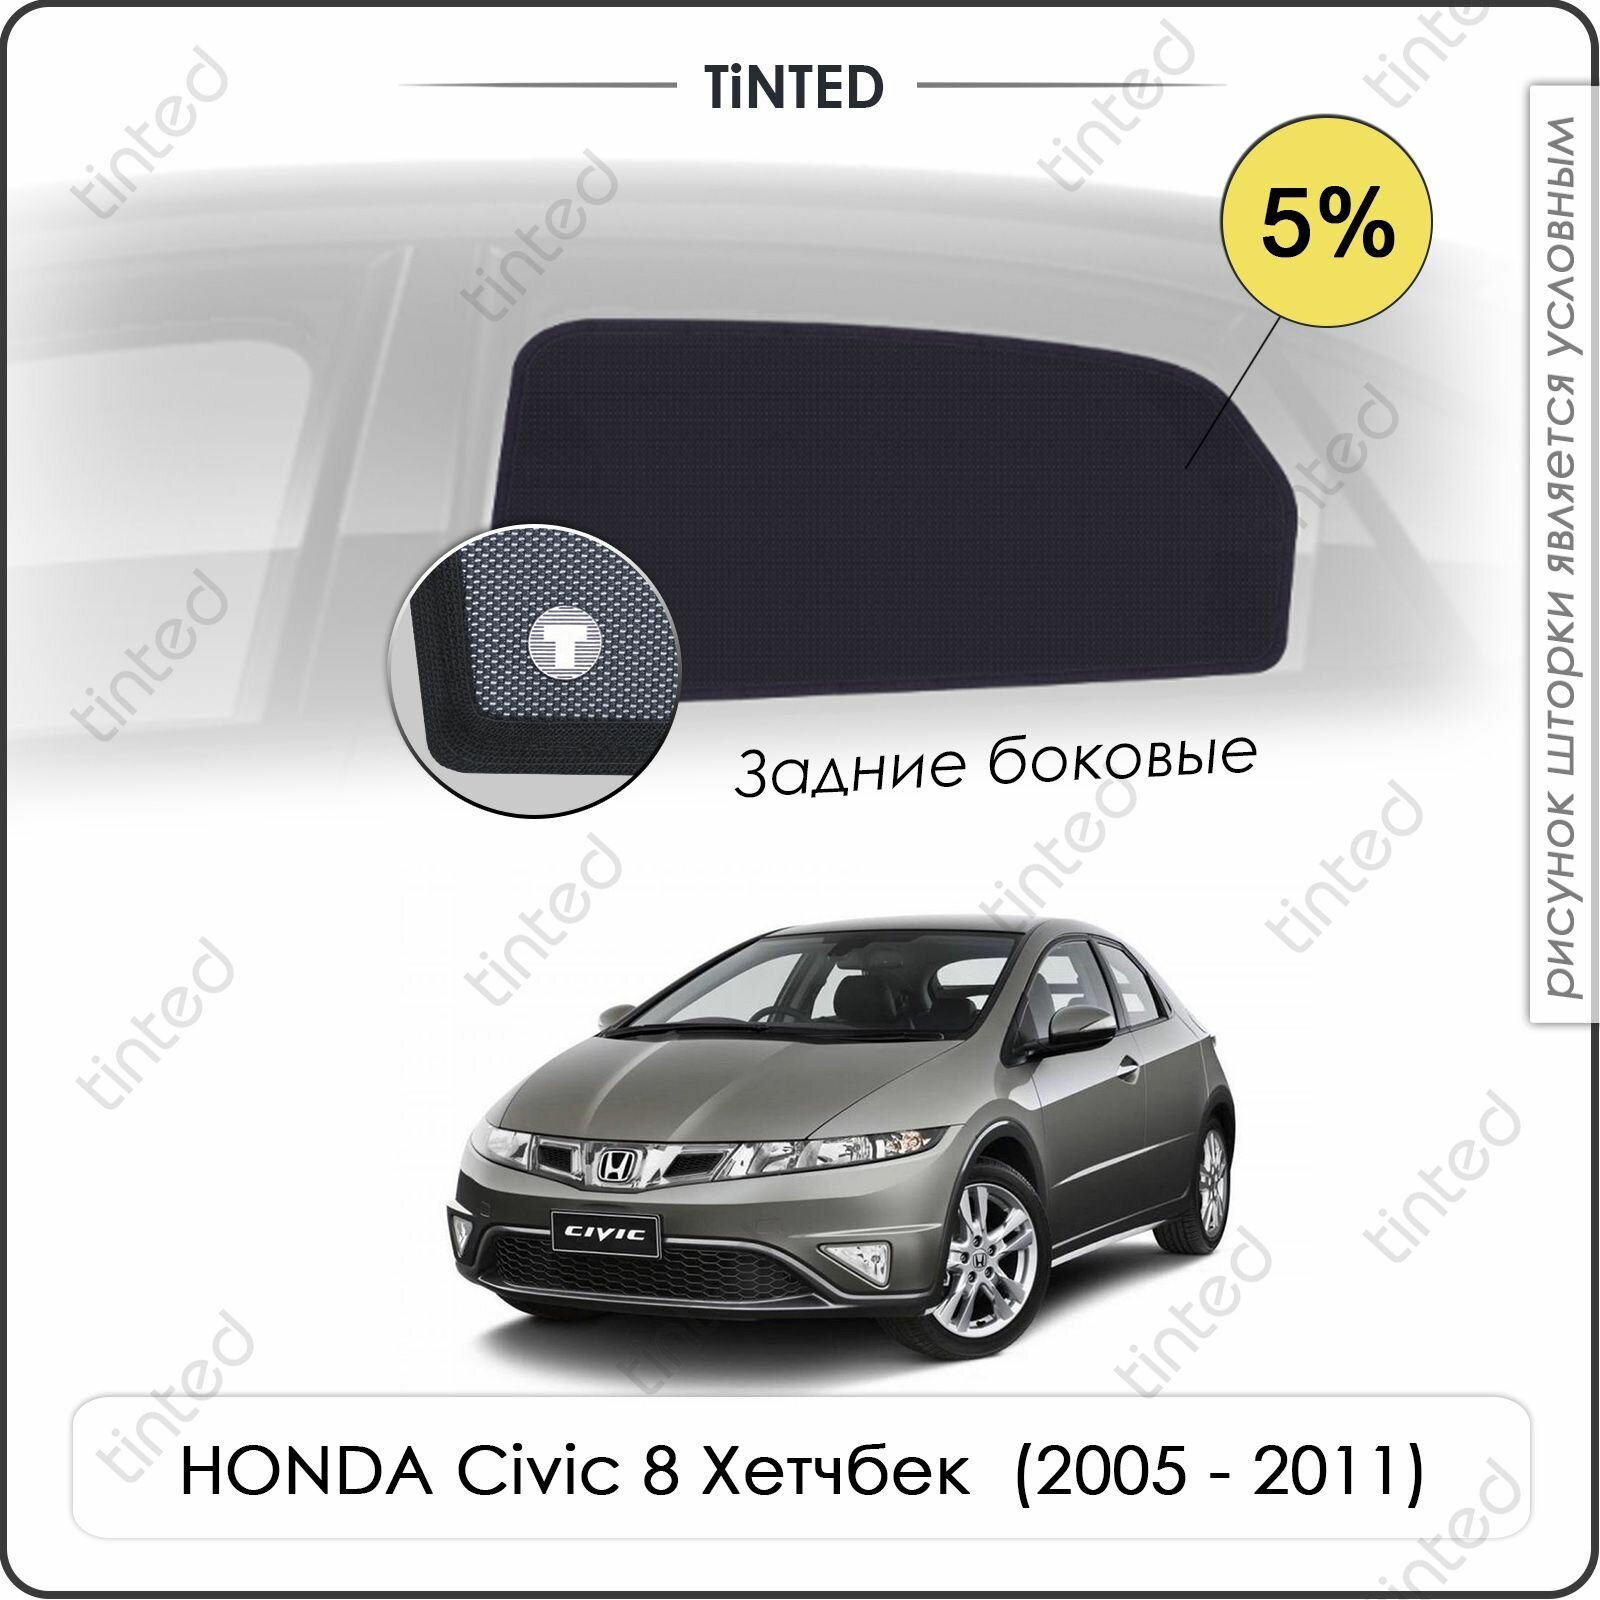 Шторки на автомобиль солнцезащитные HONDA Civic 8 Хетчбек 5дв. (2005 - 2011) на задние двери 5% сетки от солнца в машину хонда цивик Каркасные автошторки Premium